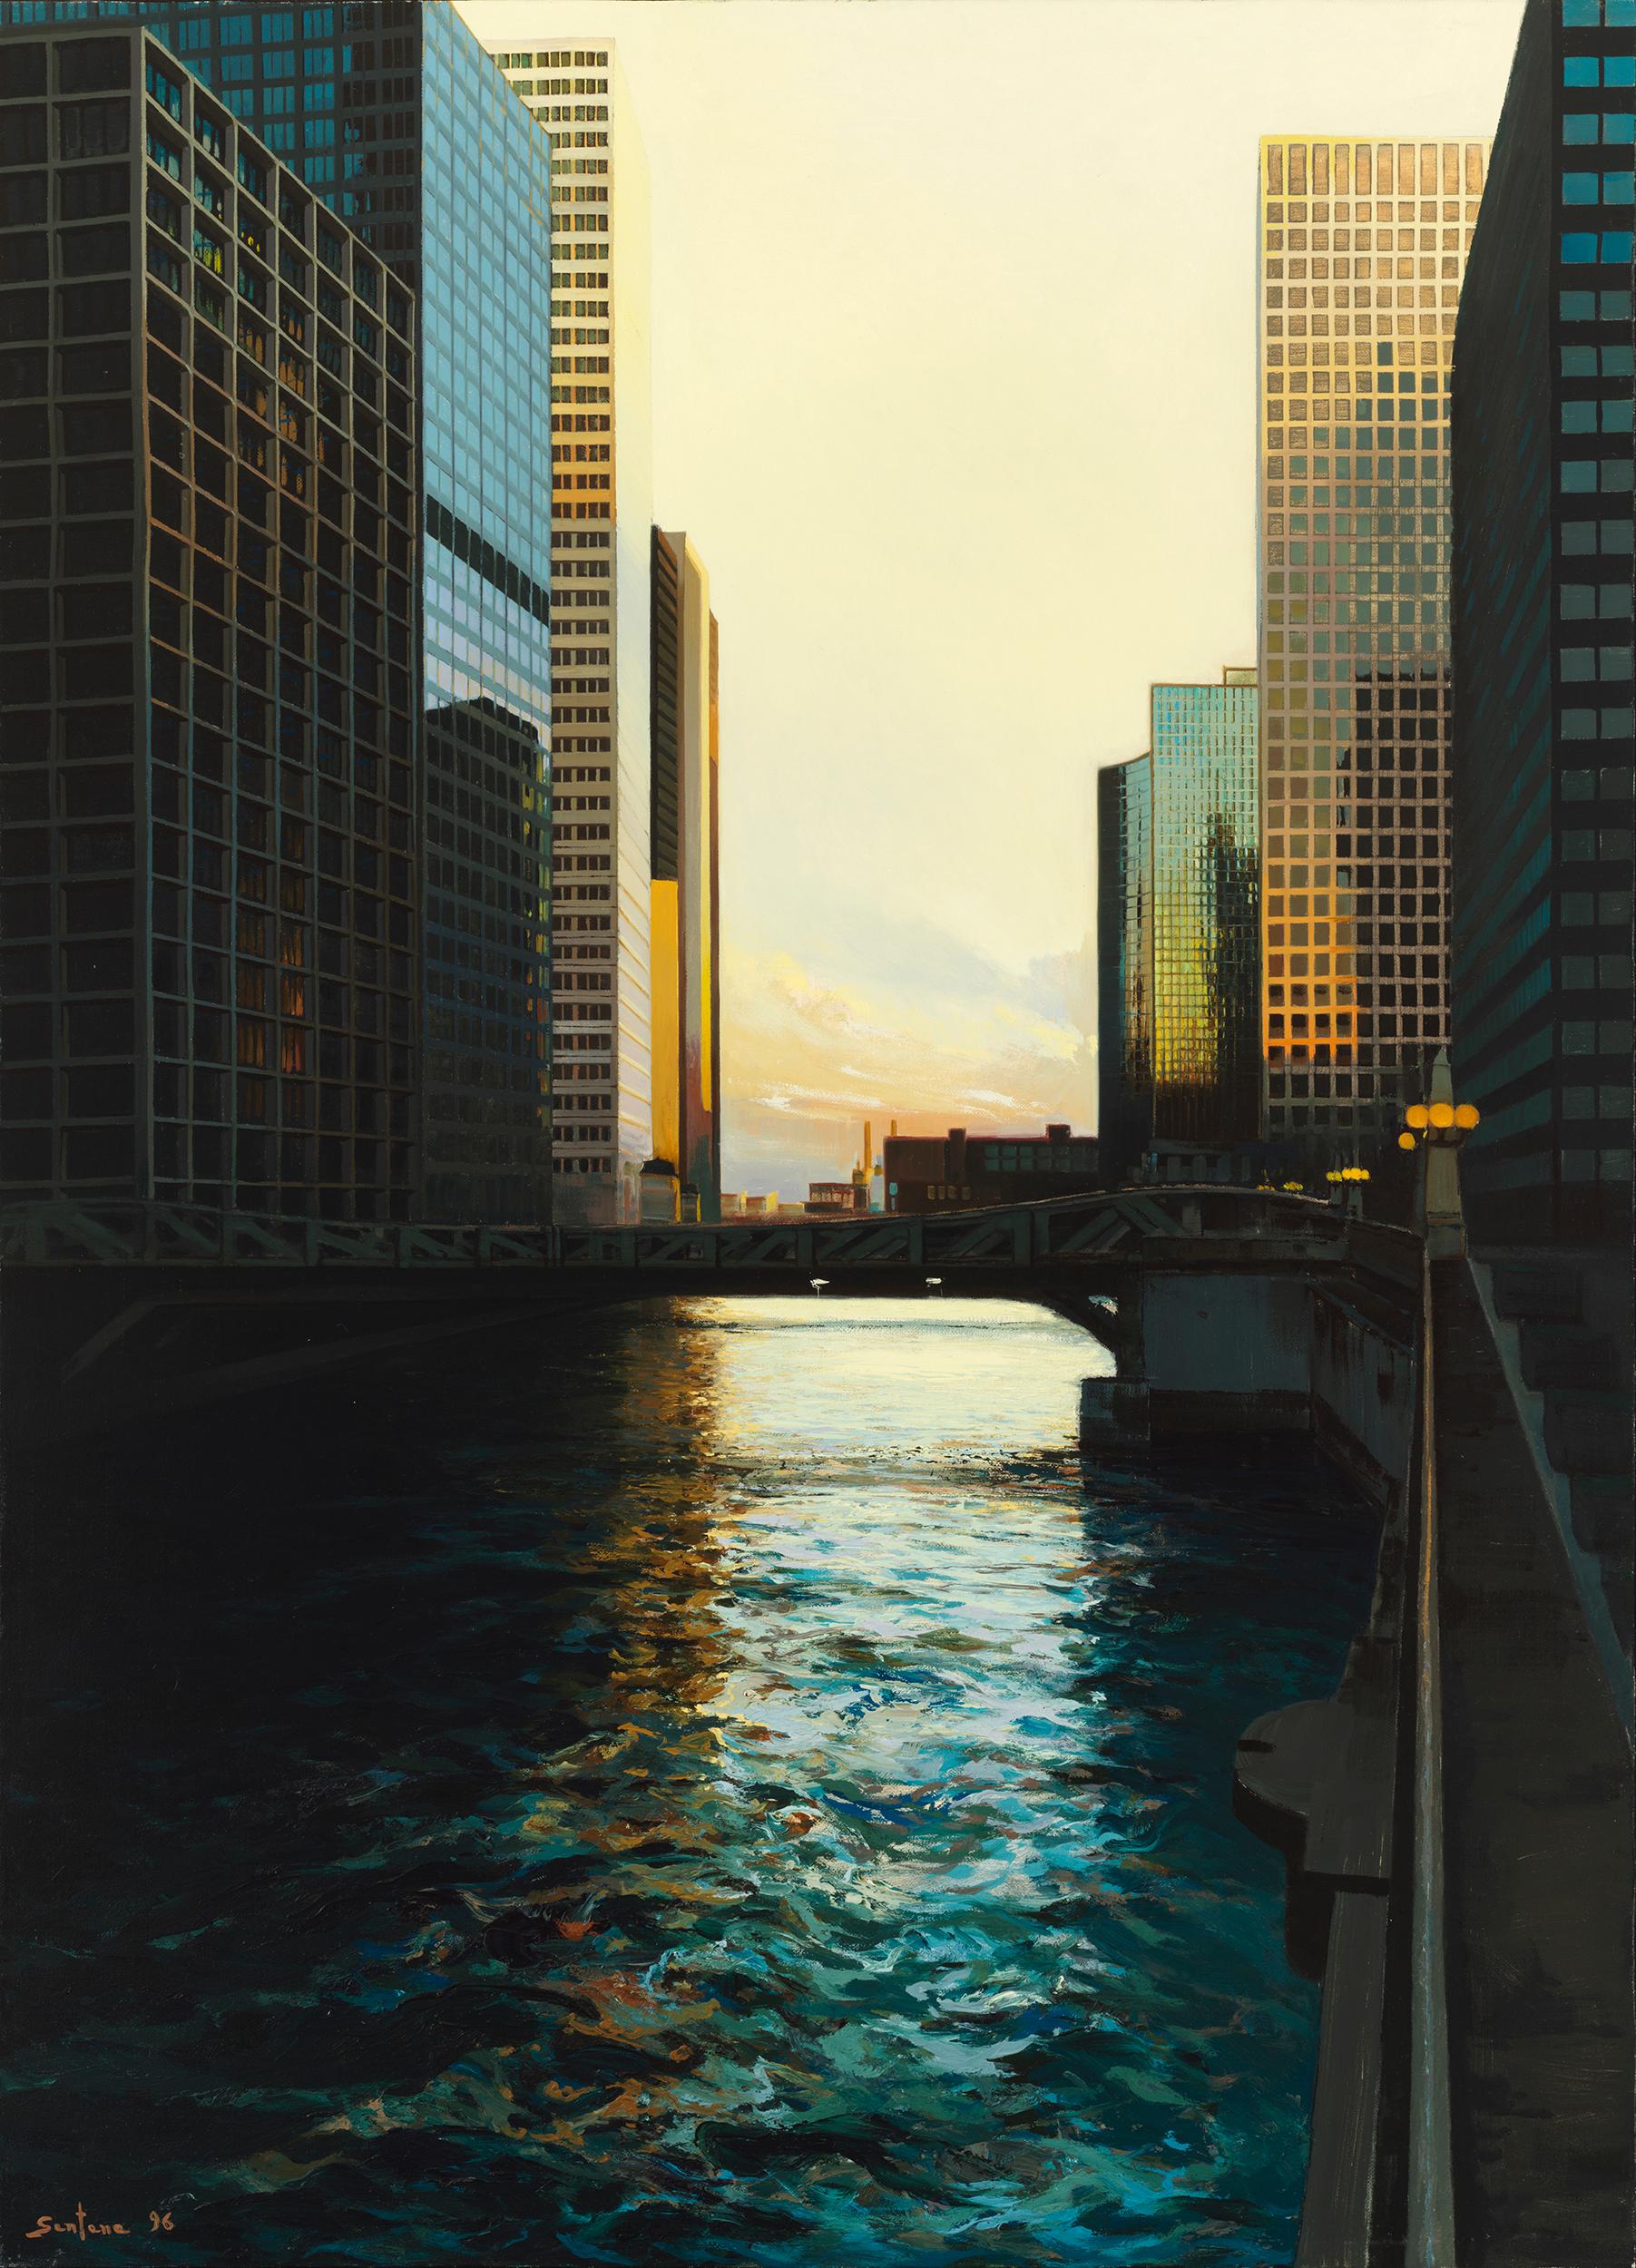 Enrique Santana Landscape Painting - River Bridge, Urban Landscape, Chicago's Loop and Chicago River, Oil on Linen